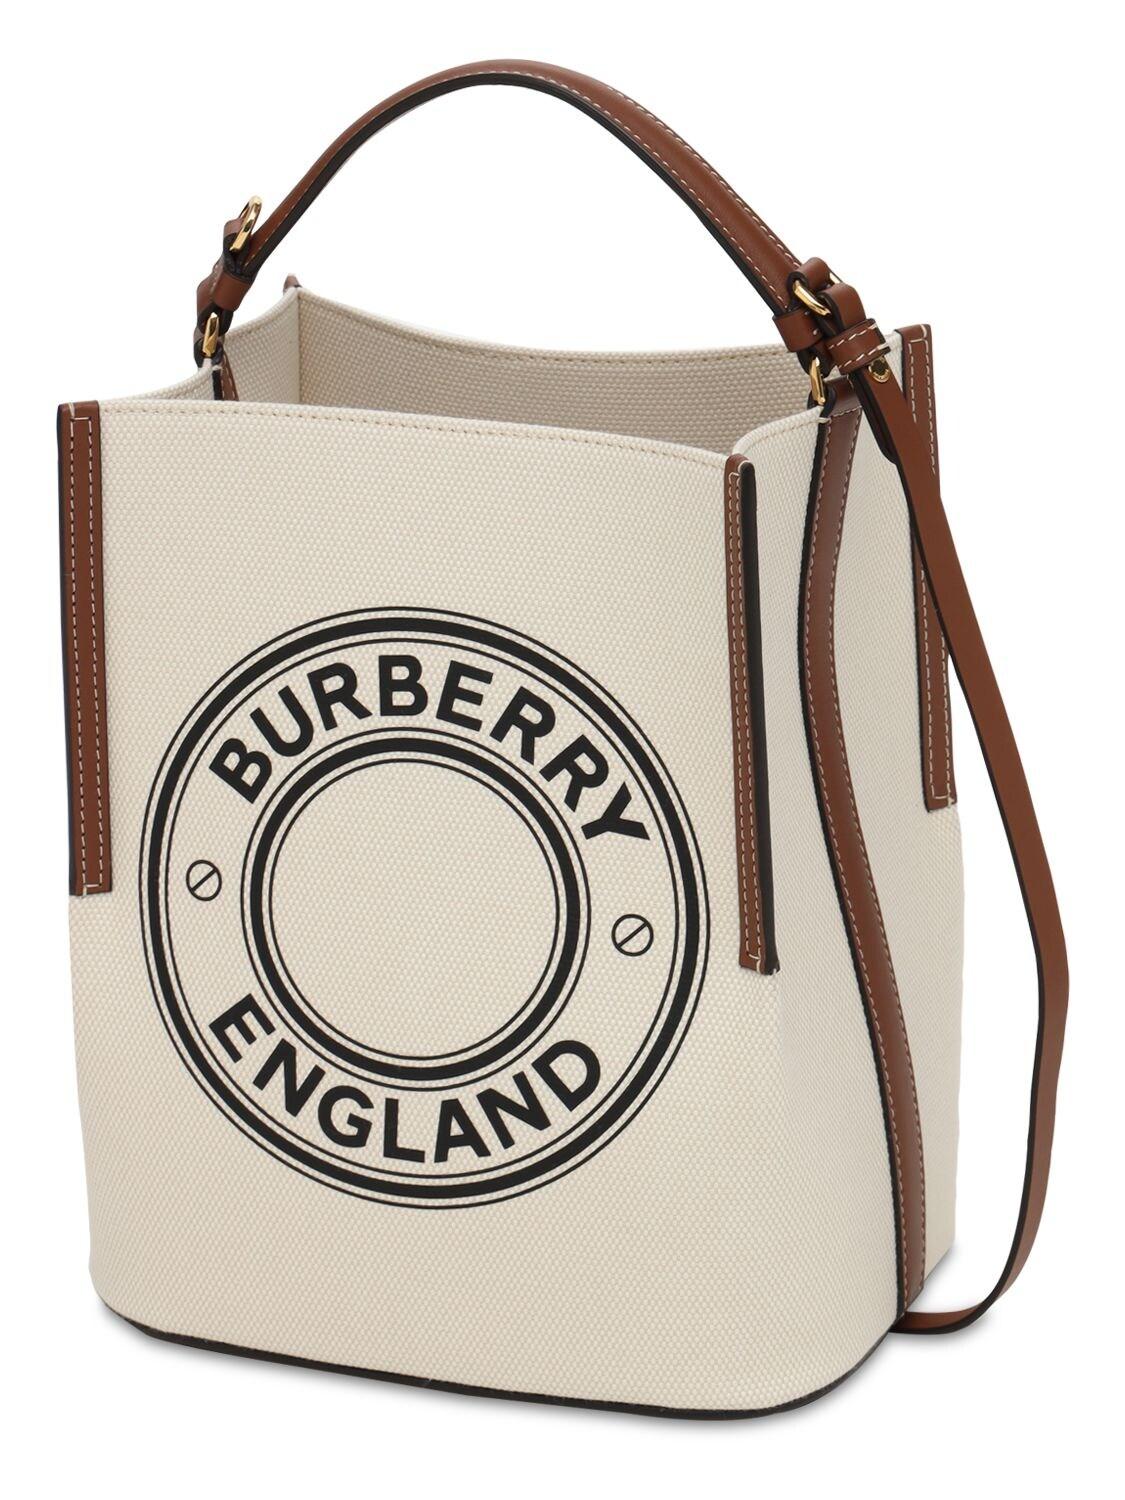 burberry bag logo